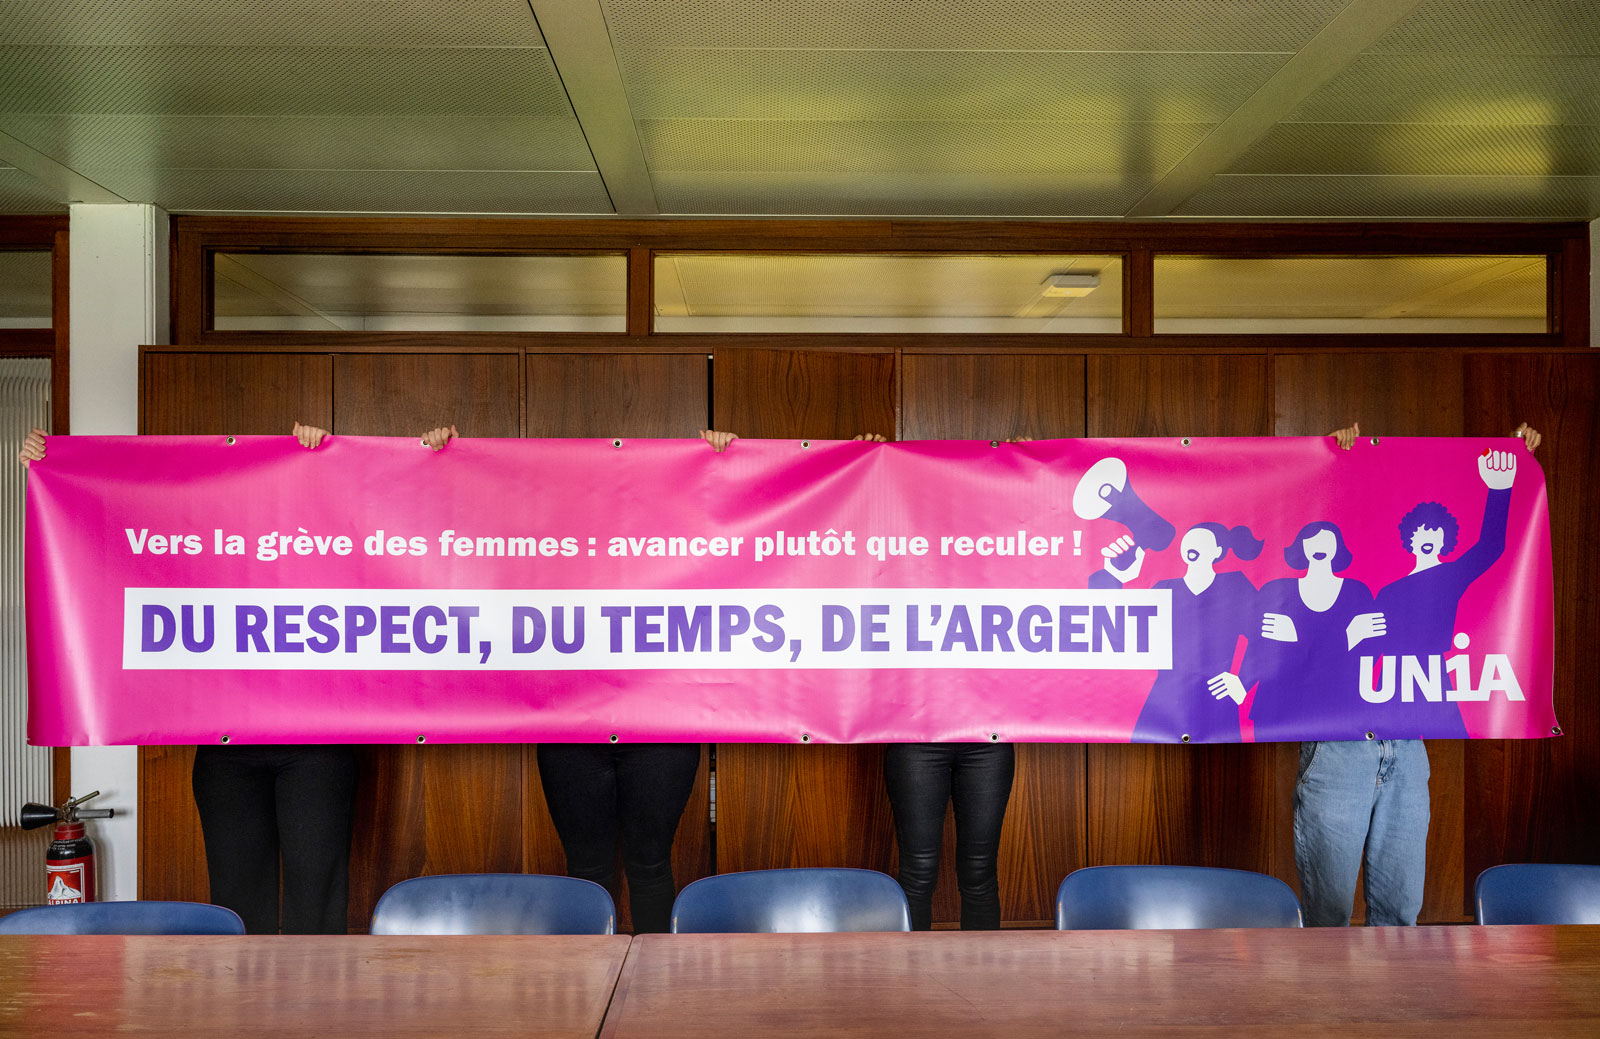 Les quatre femmes cachées derrière une banderole Unia "Du respect, du temps, de l'argent".